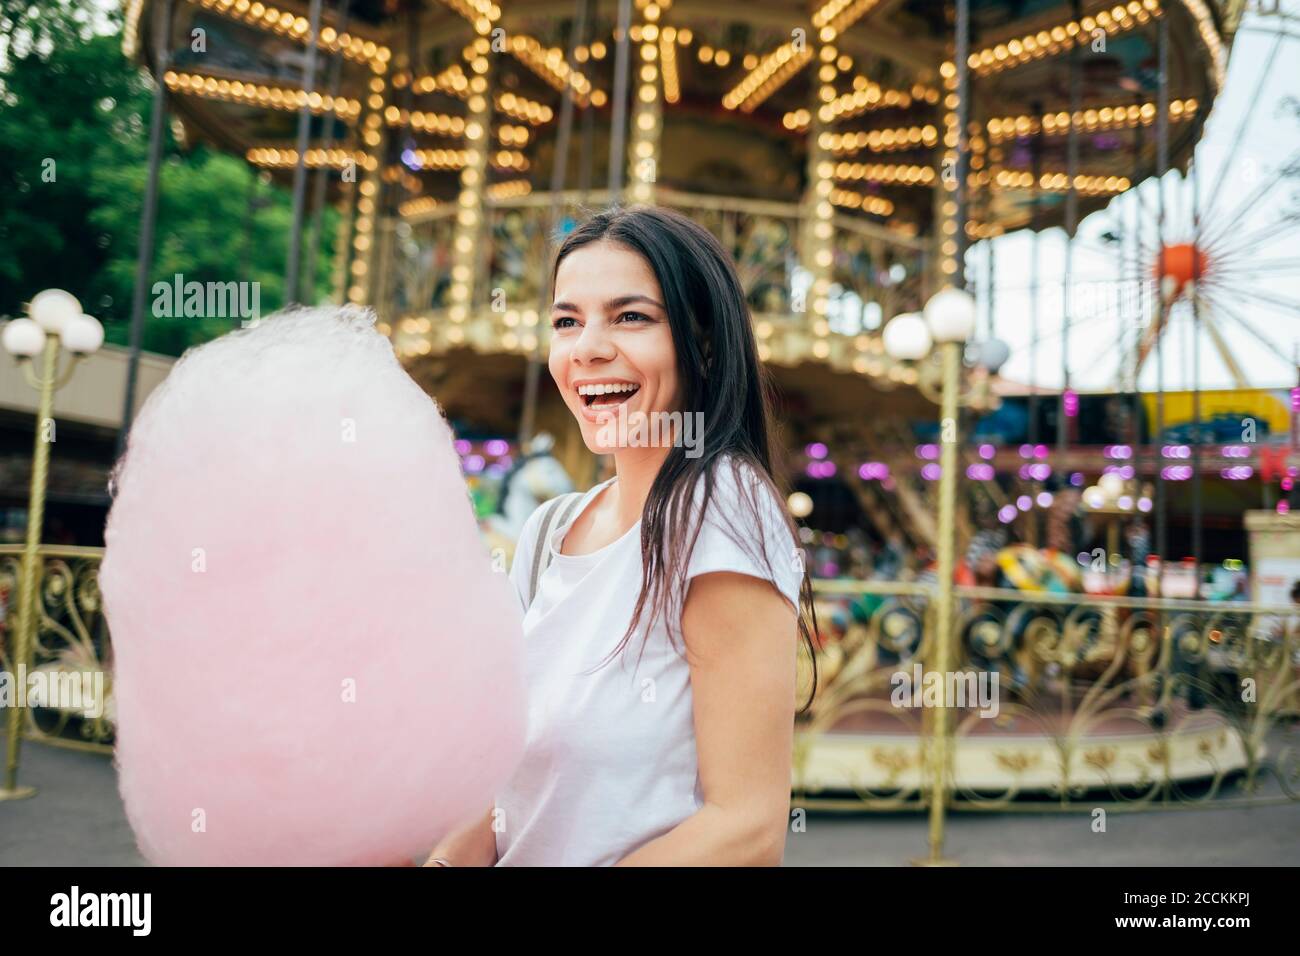 Jeune femme joyeuse avec des bonbons en coton debout dans le parc d'attractions Banque D'Images